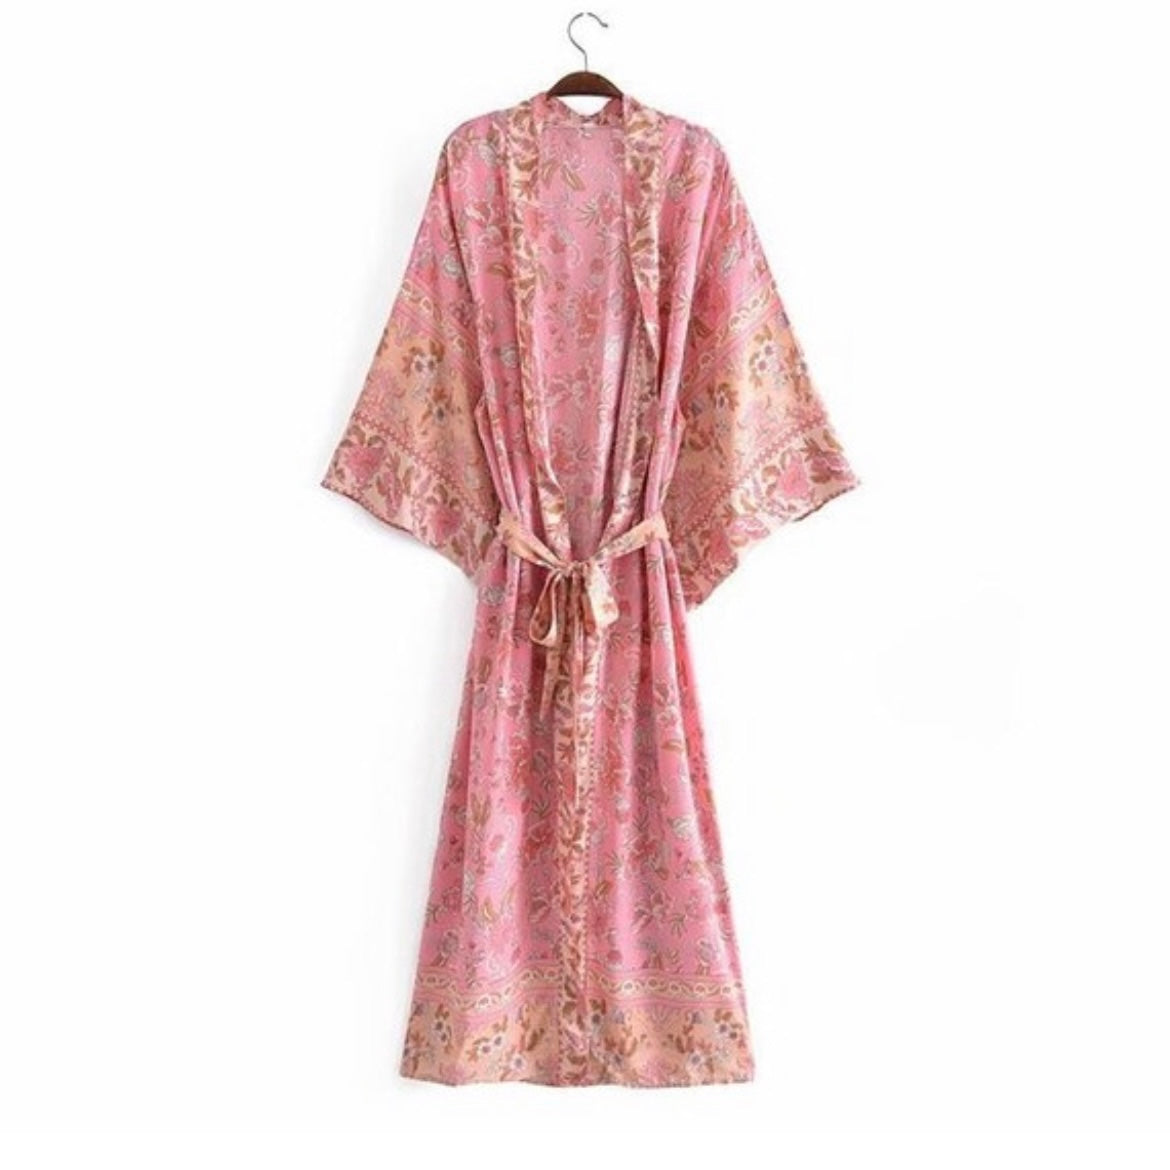 Kimono - Japanese Inspired Kimono